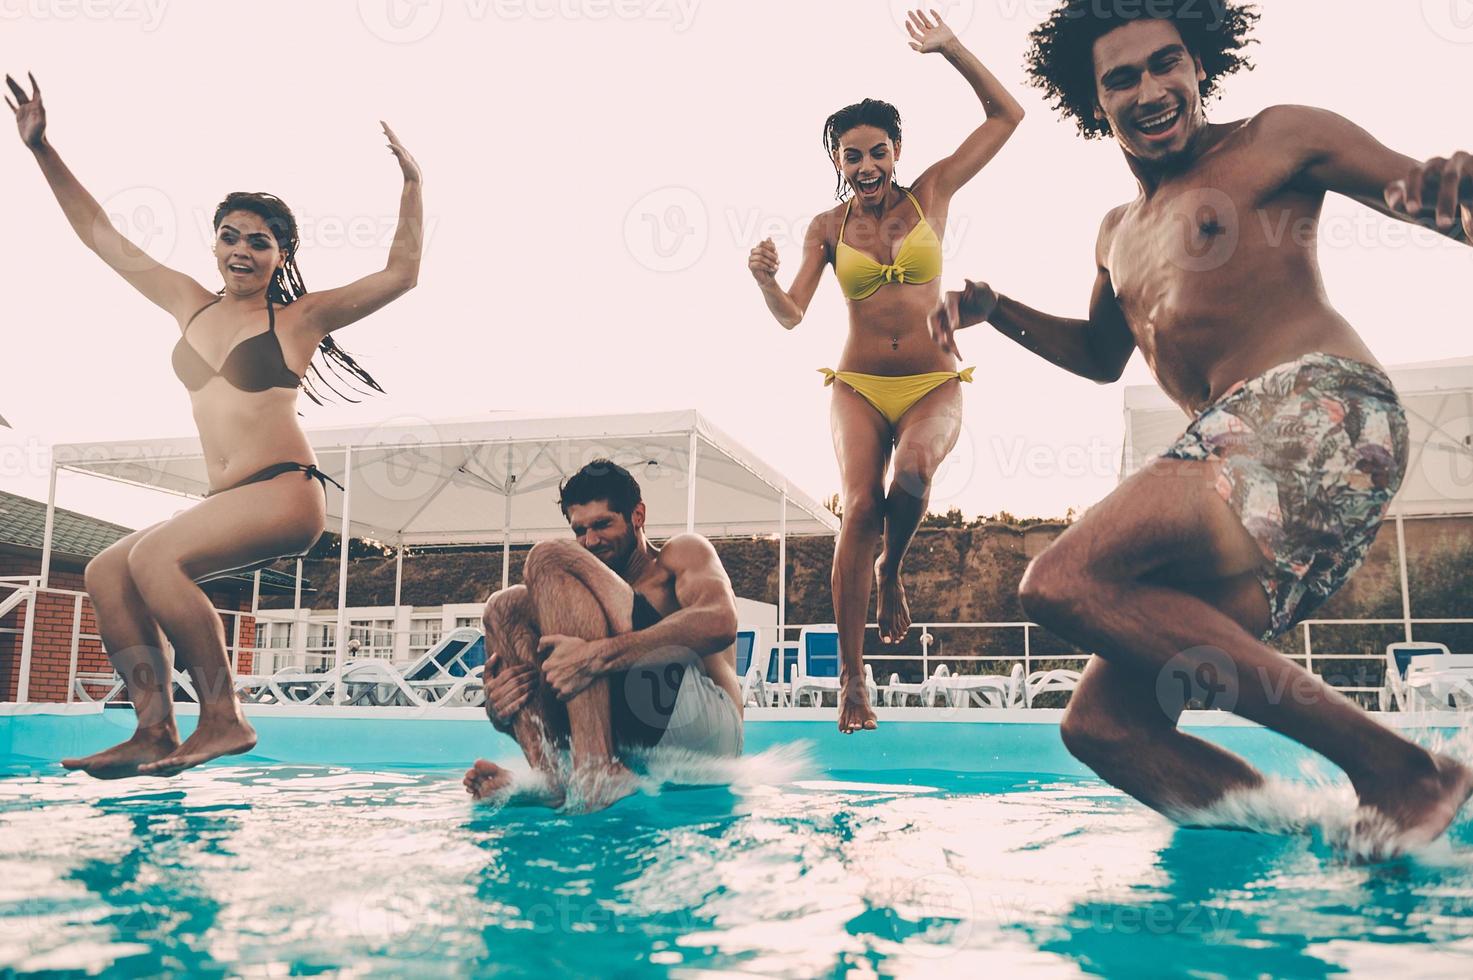 fiesta de piscina. grupo de hermosos jóvenes que se ven felices mientras saltan juntos a la piscina foto